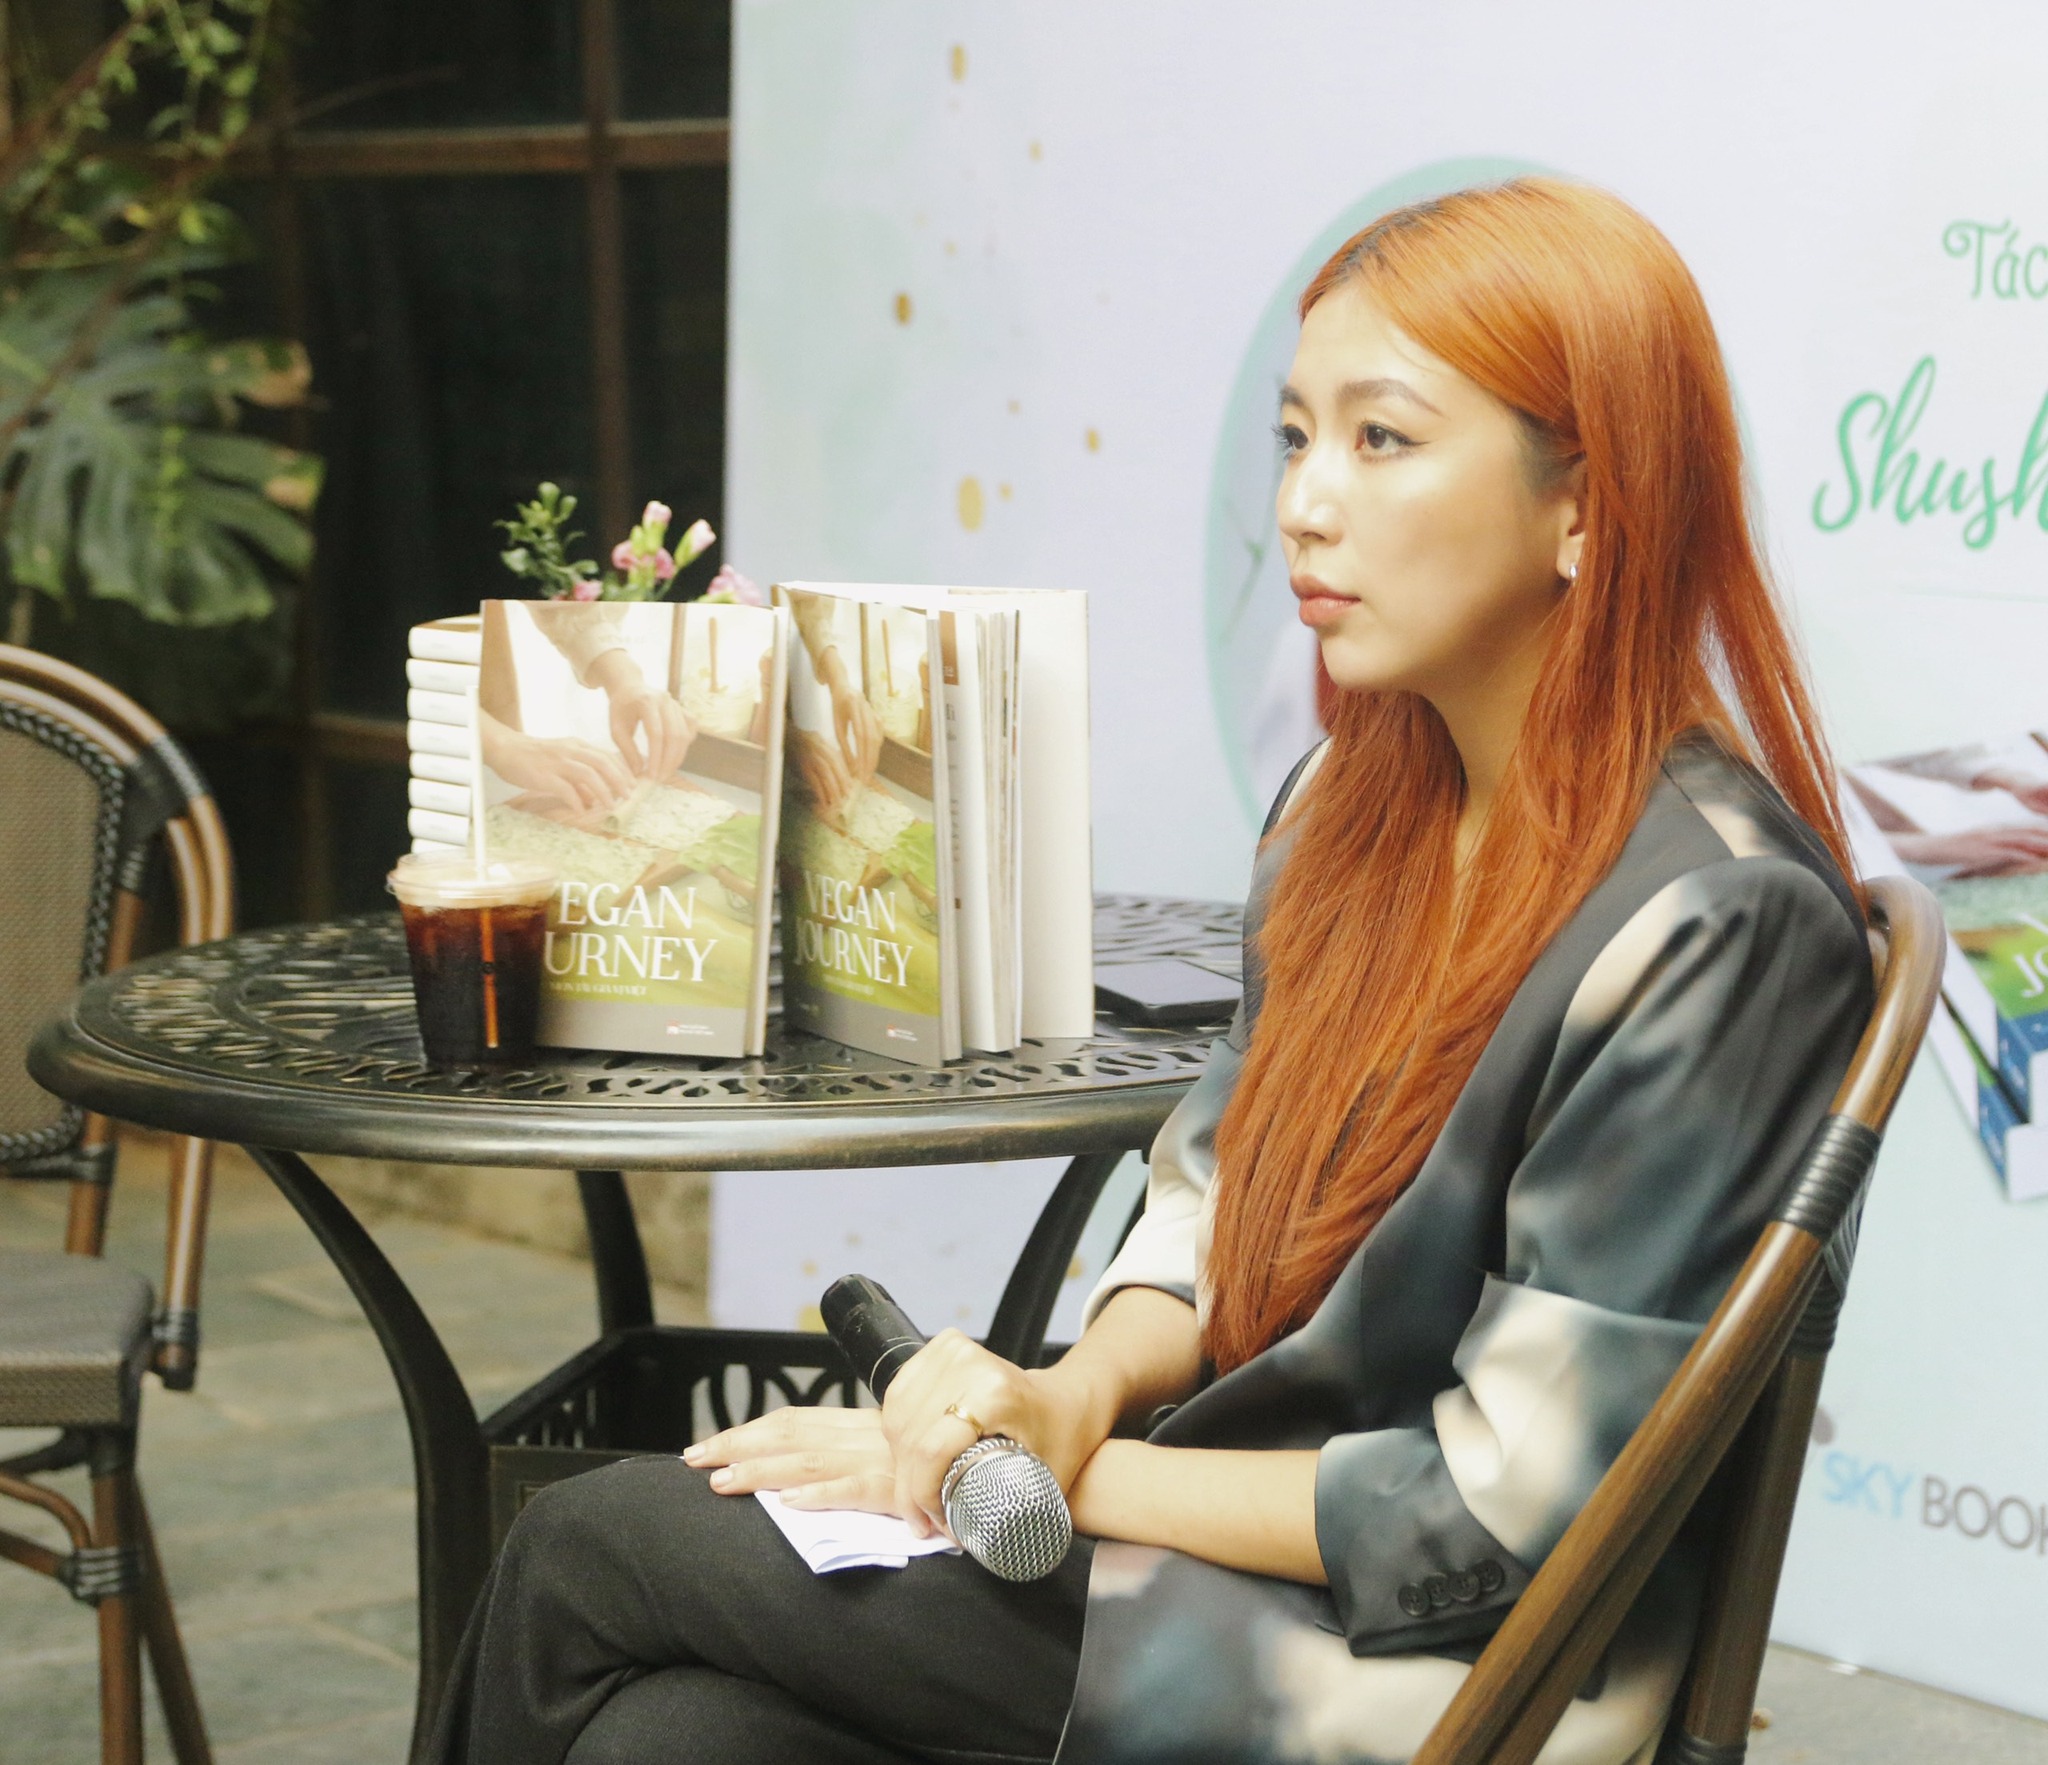 Tác giả Shushu Lê trong buổi ra mắt cuốn sách đầu tay "Vegan Journey" - Món tây gia vị Việt 